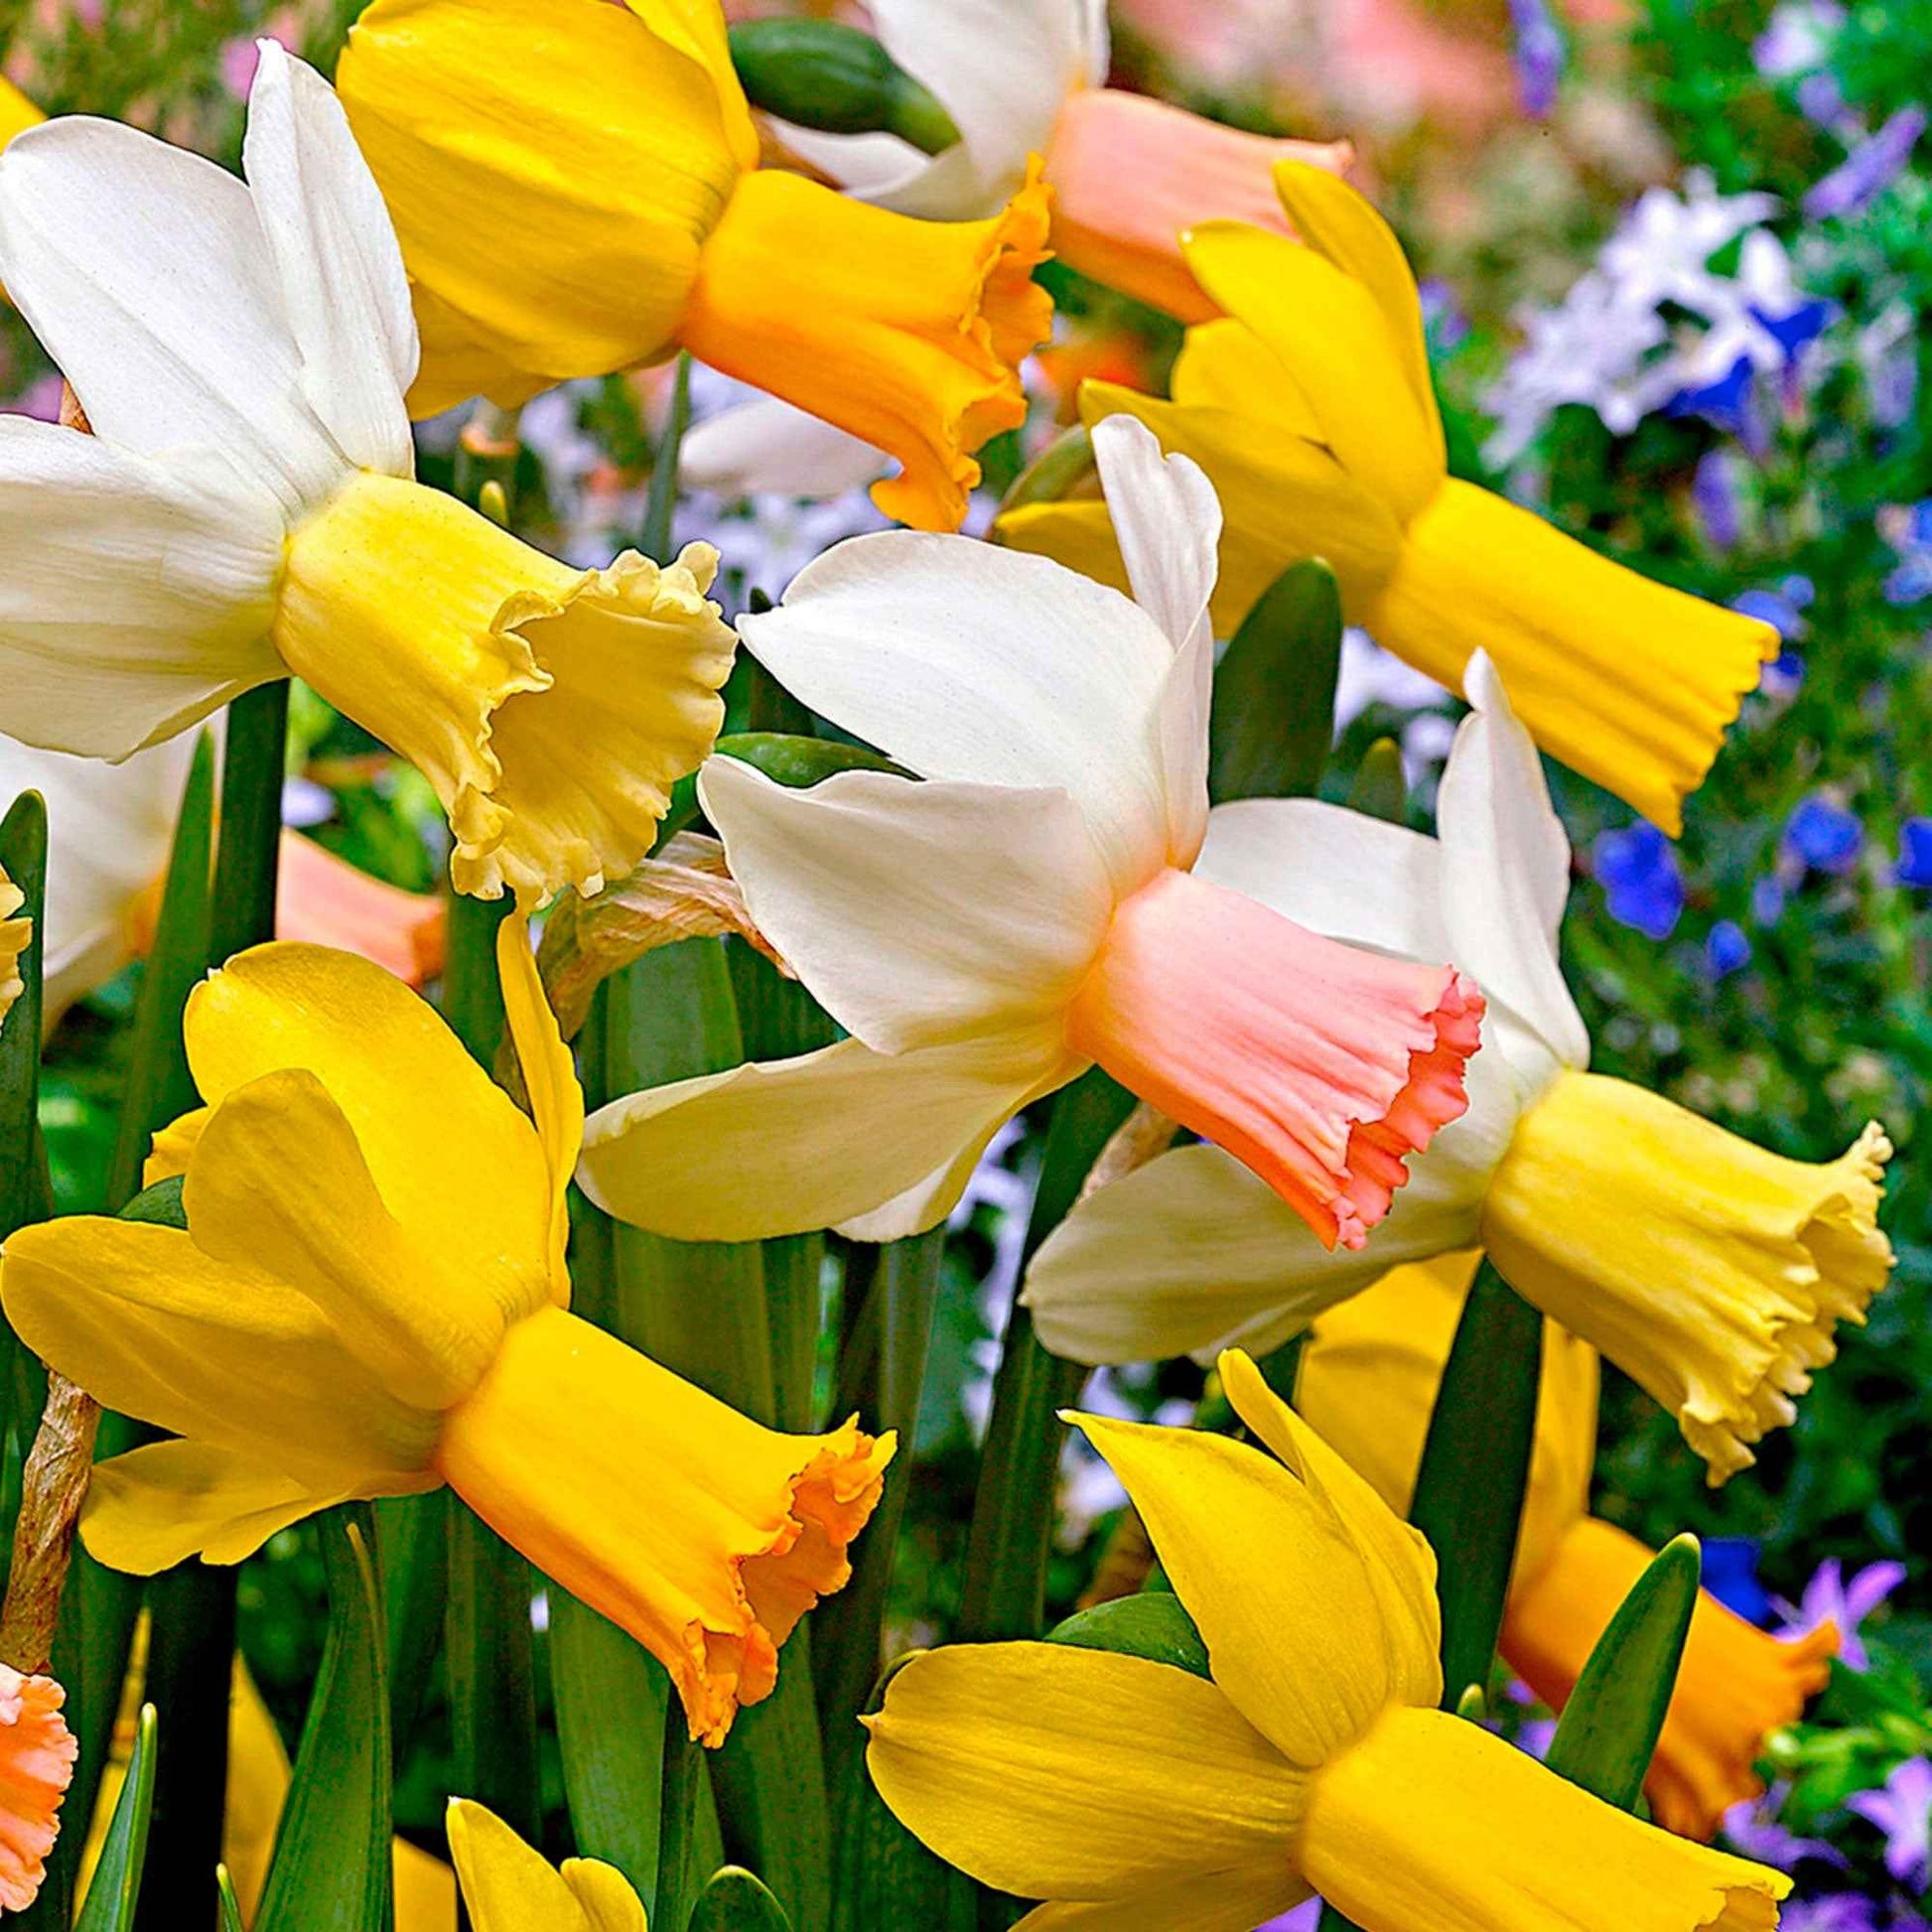 25x Narcisse Narcissus - Mélange 'Dwarf' biologique jaune-blanc - Bulbes de fleurs biologiques